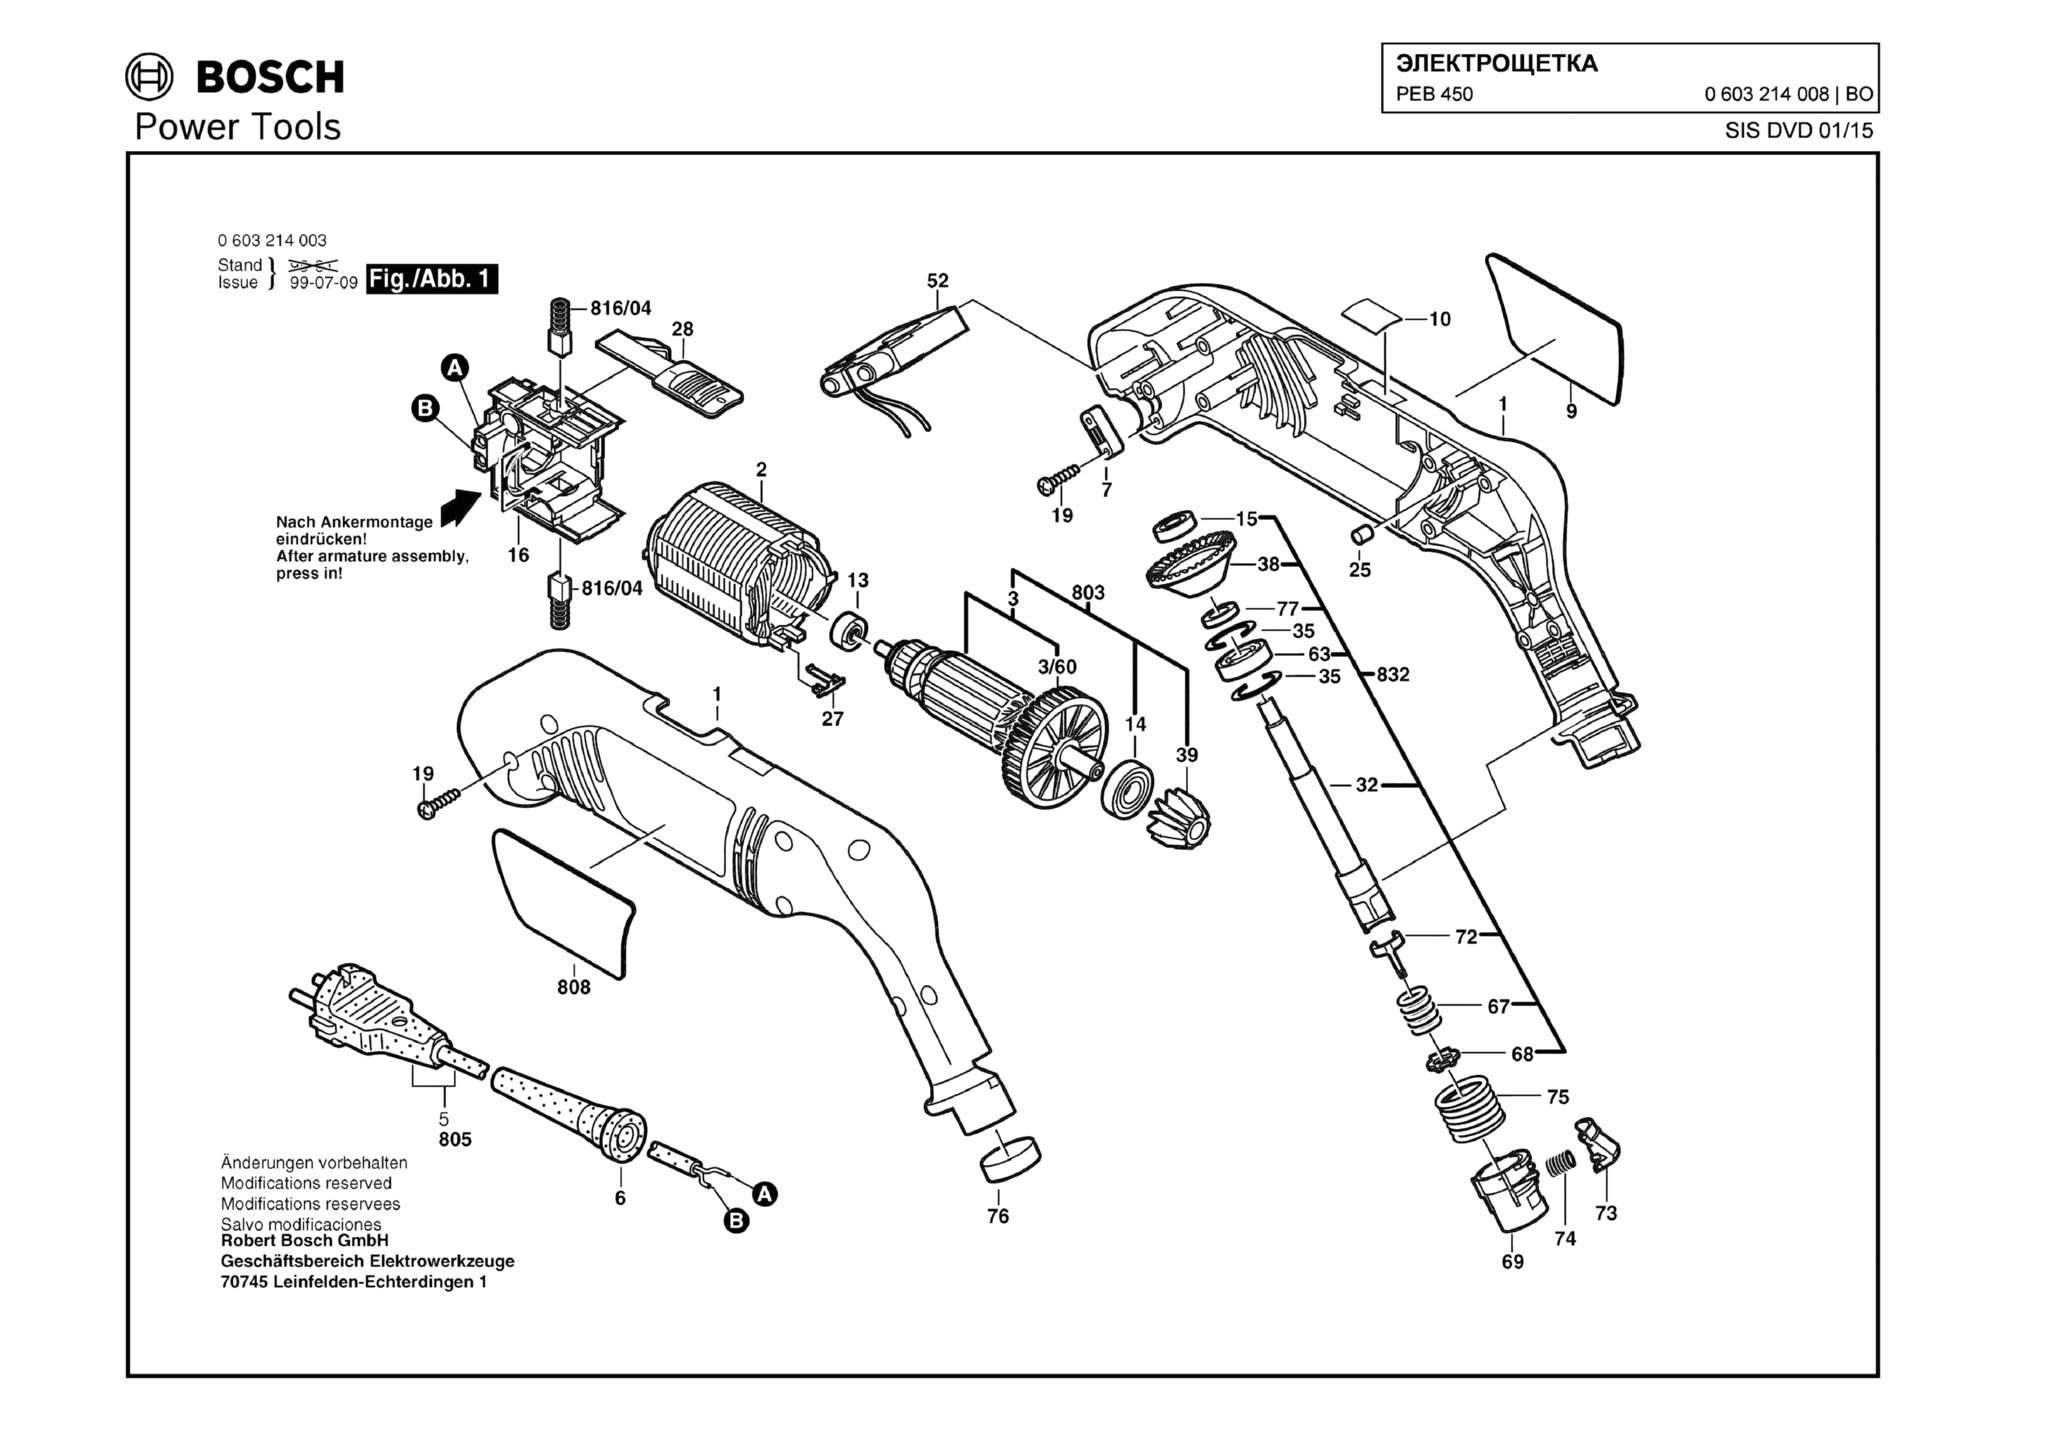 Запчасти, схема и деталировка Bosch PEB 450 (ТИП 0603214008)